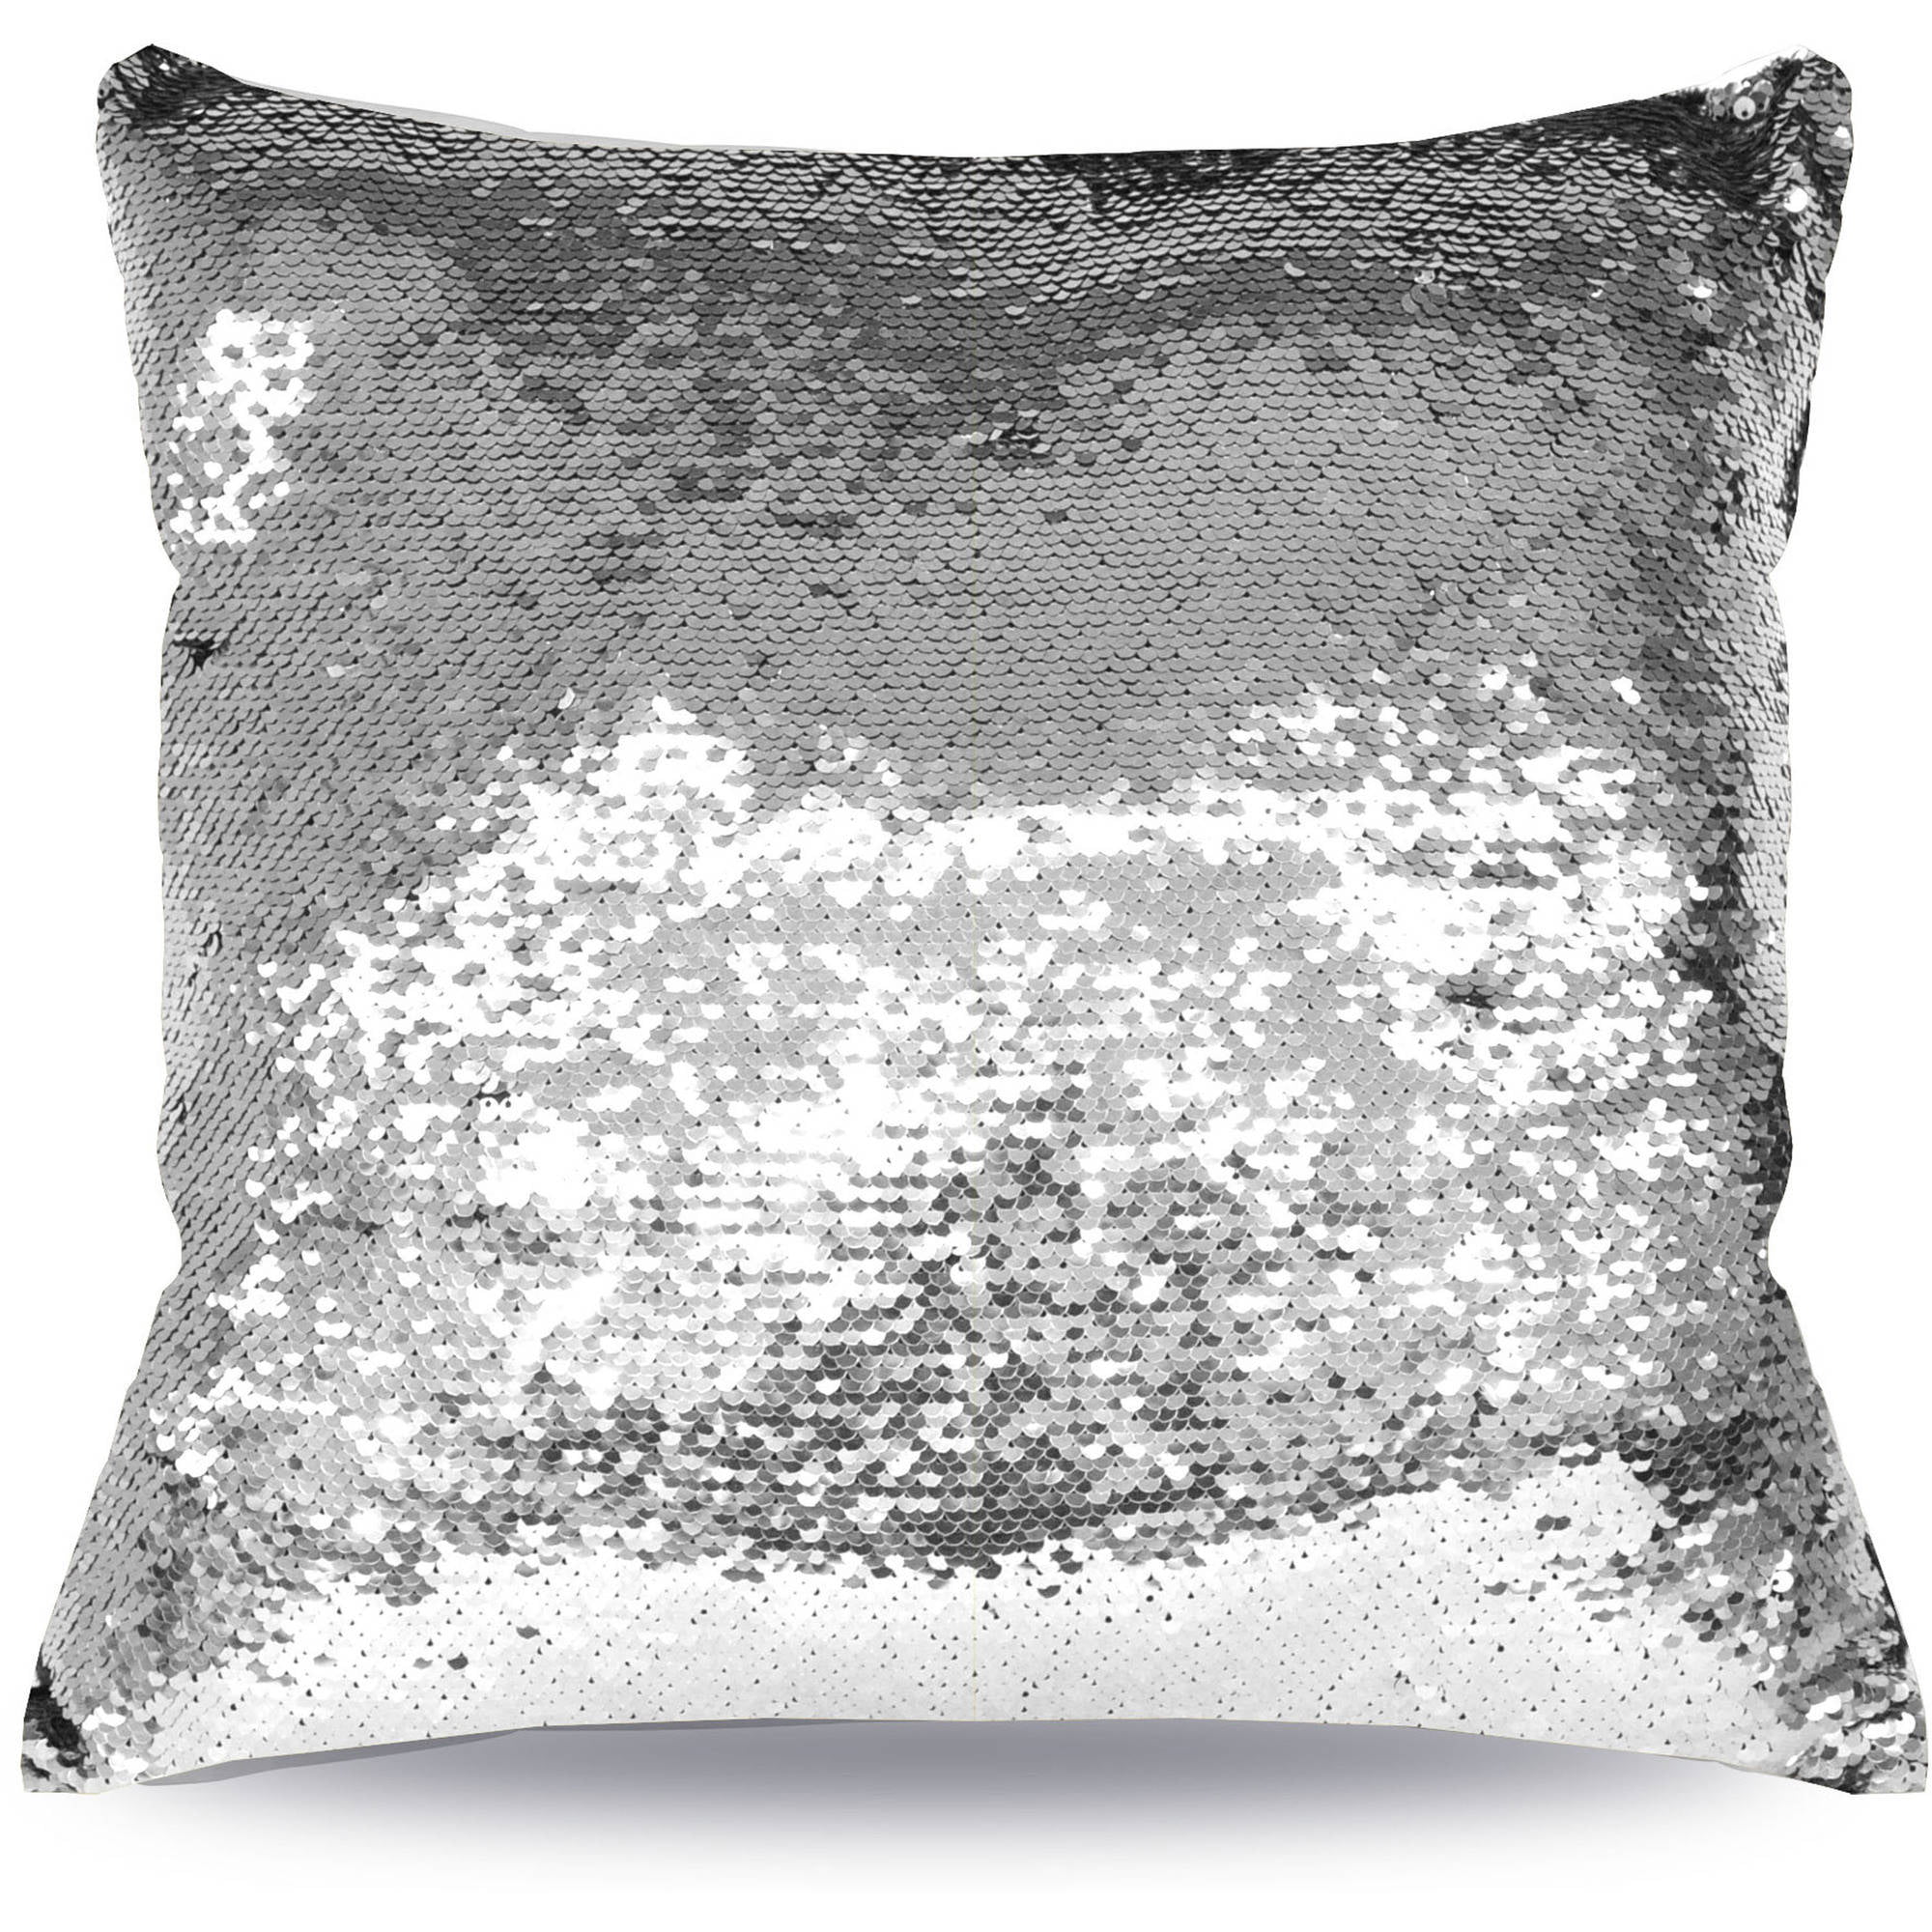 white glitter cushions